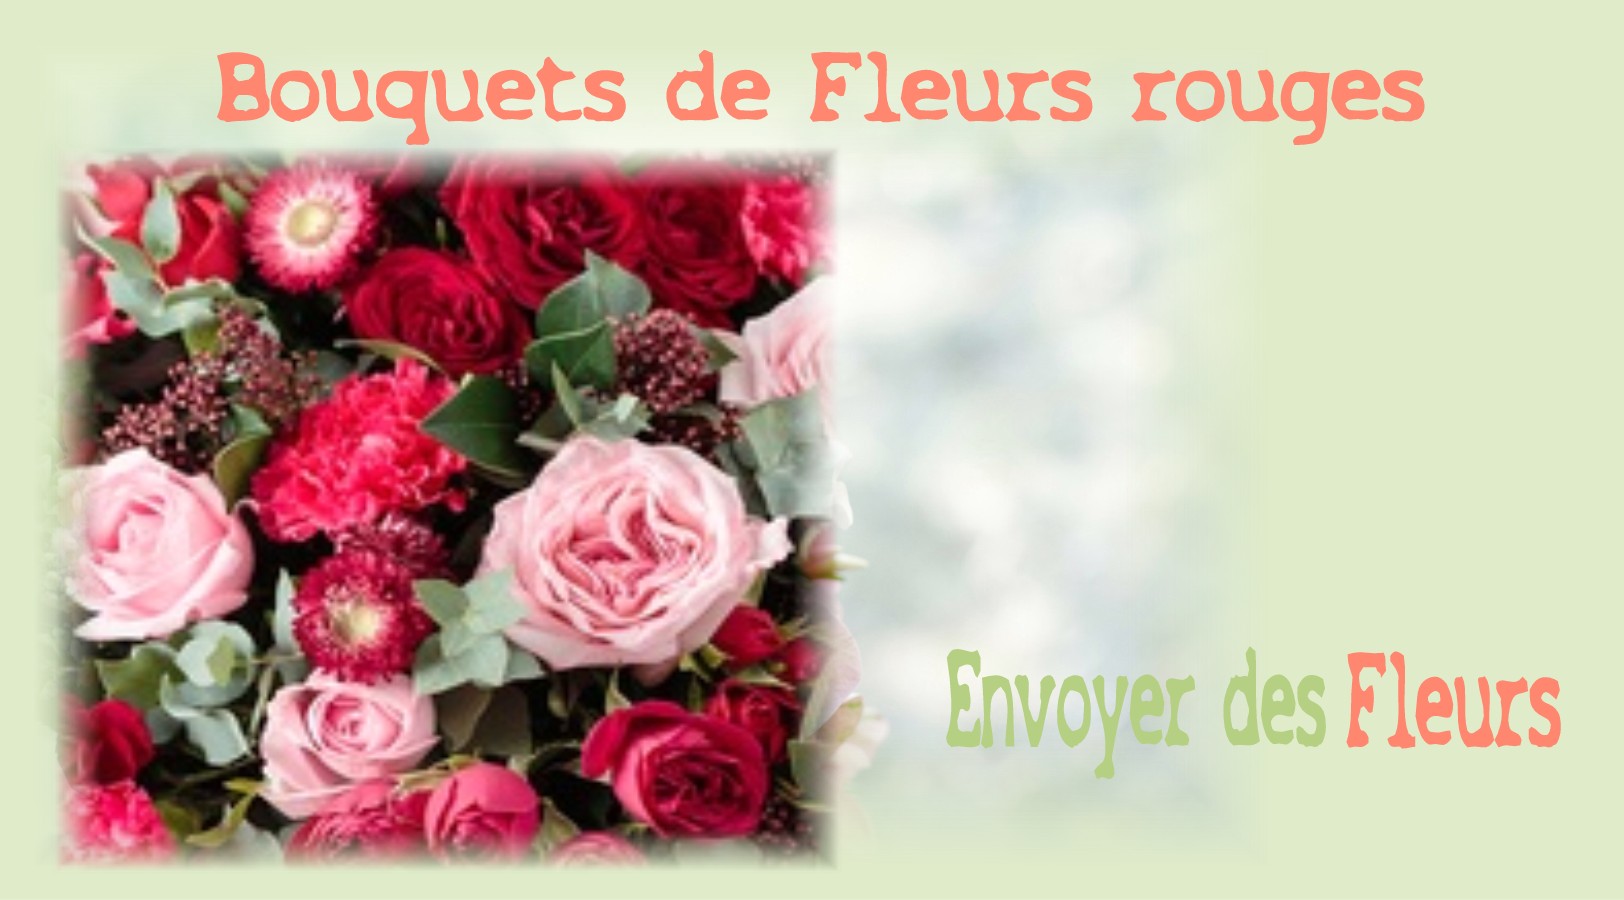 BOUQUETS DE FLEURS ROUGES - FLEURISTE des ALPES MARITIMES - ENVOYER DES FLEURS